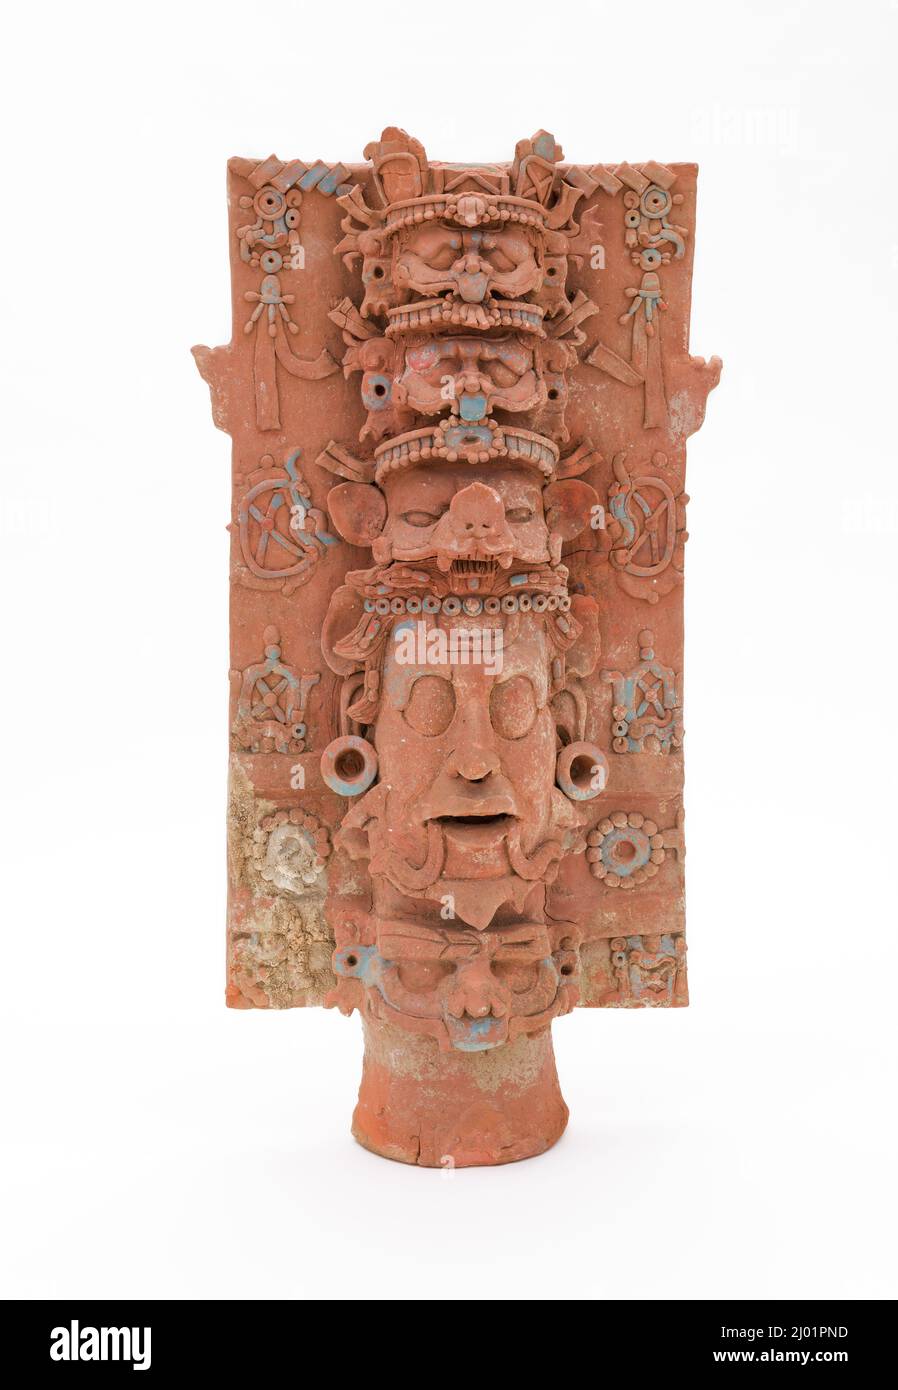 Zenser steht mit Sonnengottheiten. Mexiko, Chiapas, Umgebung von Palenque, Maya, 650–850 u.Z. Keramik. Nach dem Brand lackierte Keramik Stockfoto